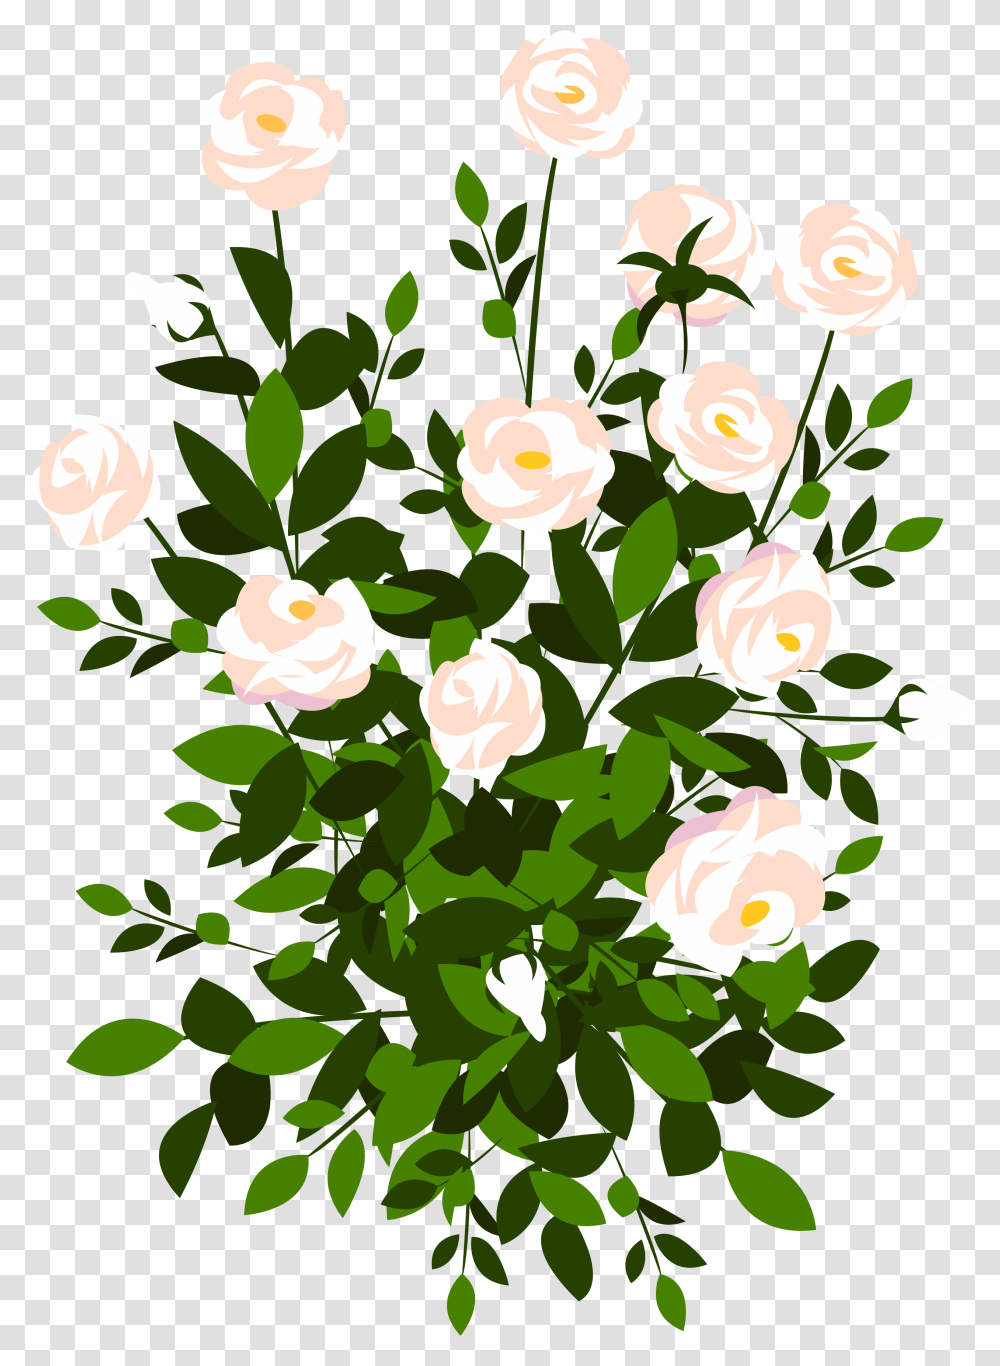 Whte Rose Bush Clipart Picture Rose Bush Clipart, Plant, Floral Design, Pattern Transparent Png